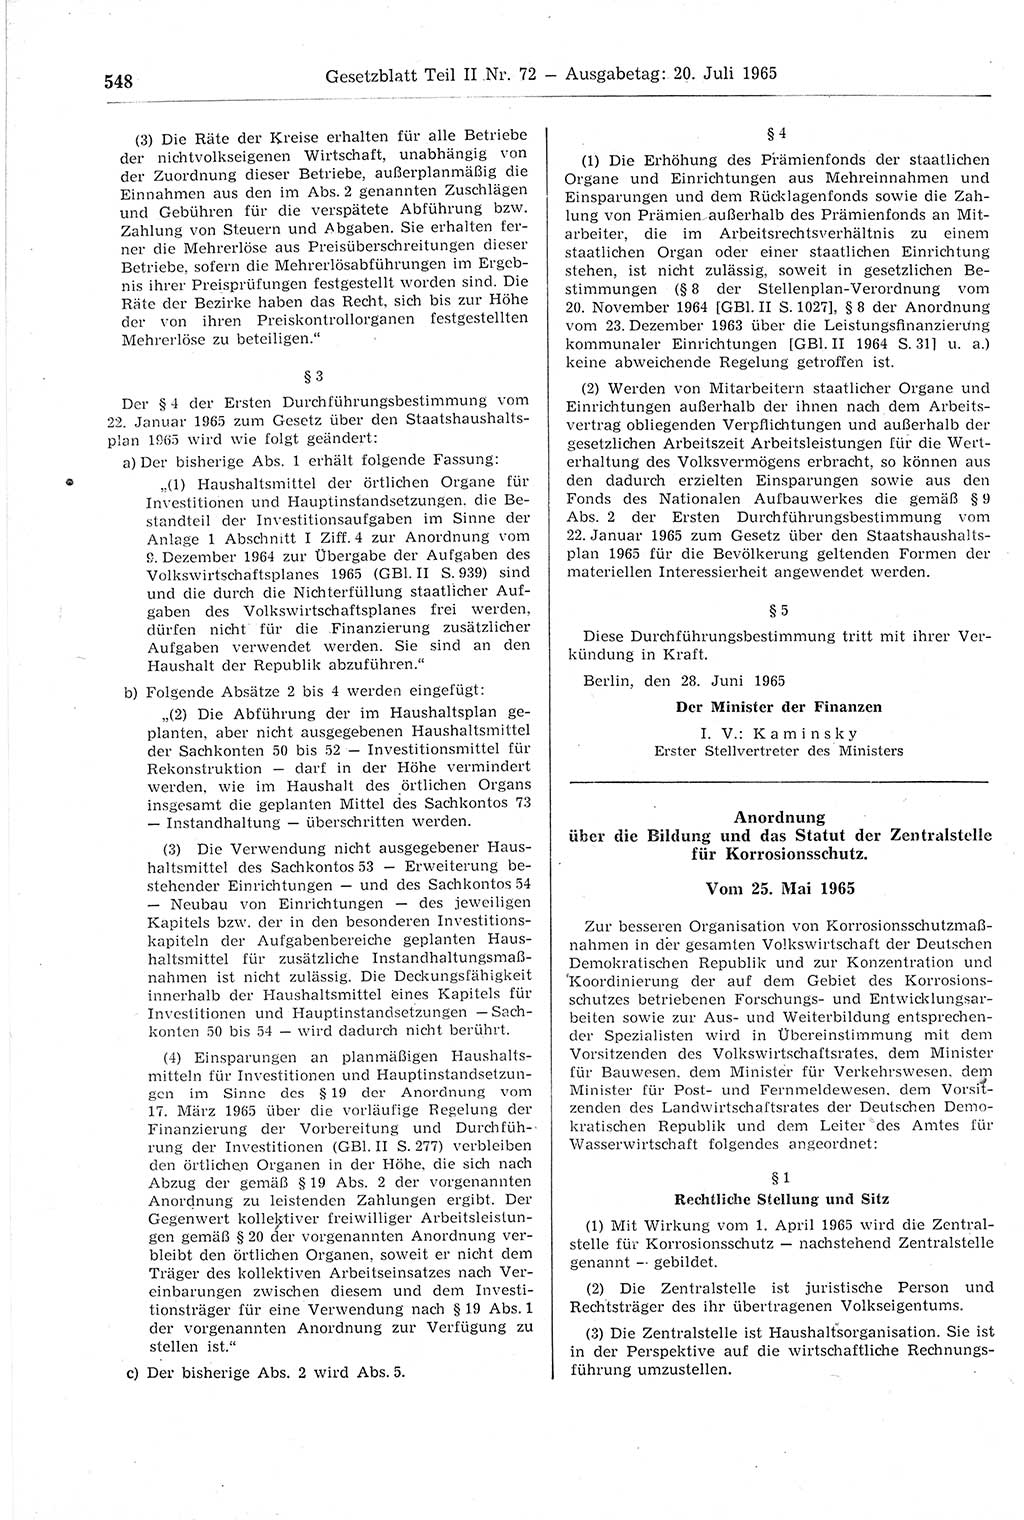 Gesetzblatt (GBl.) der Deutschen Demokratischen Republik (DDR) Teil ⅠⅠ 1965, Seite 548 (GBl. DDR ⅠⅠ 1965, S. 548)